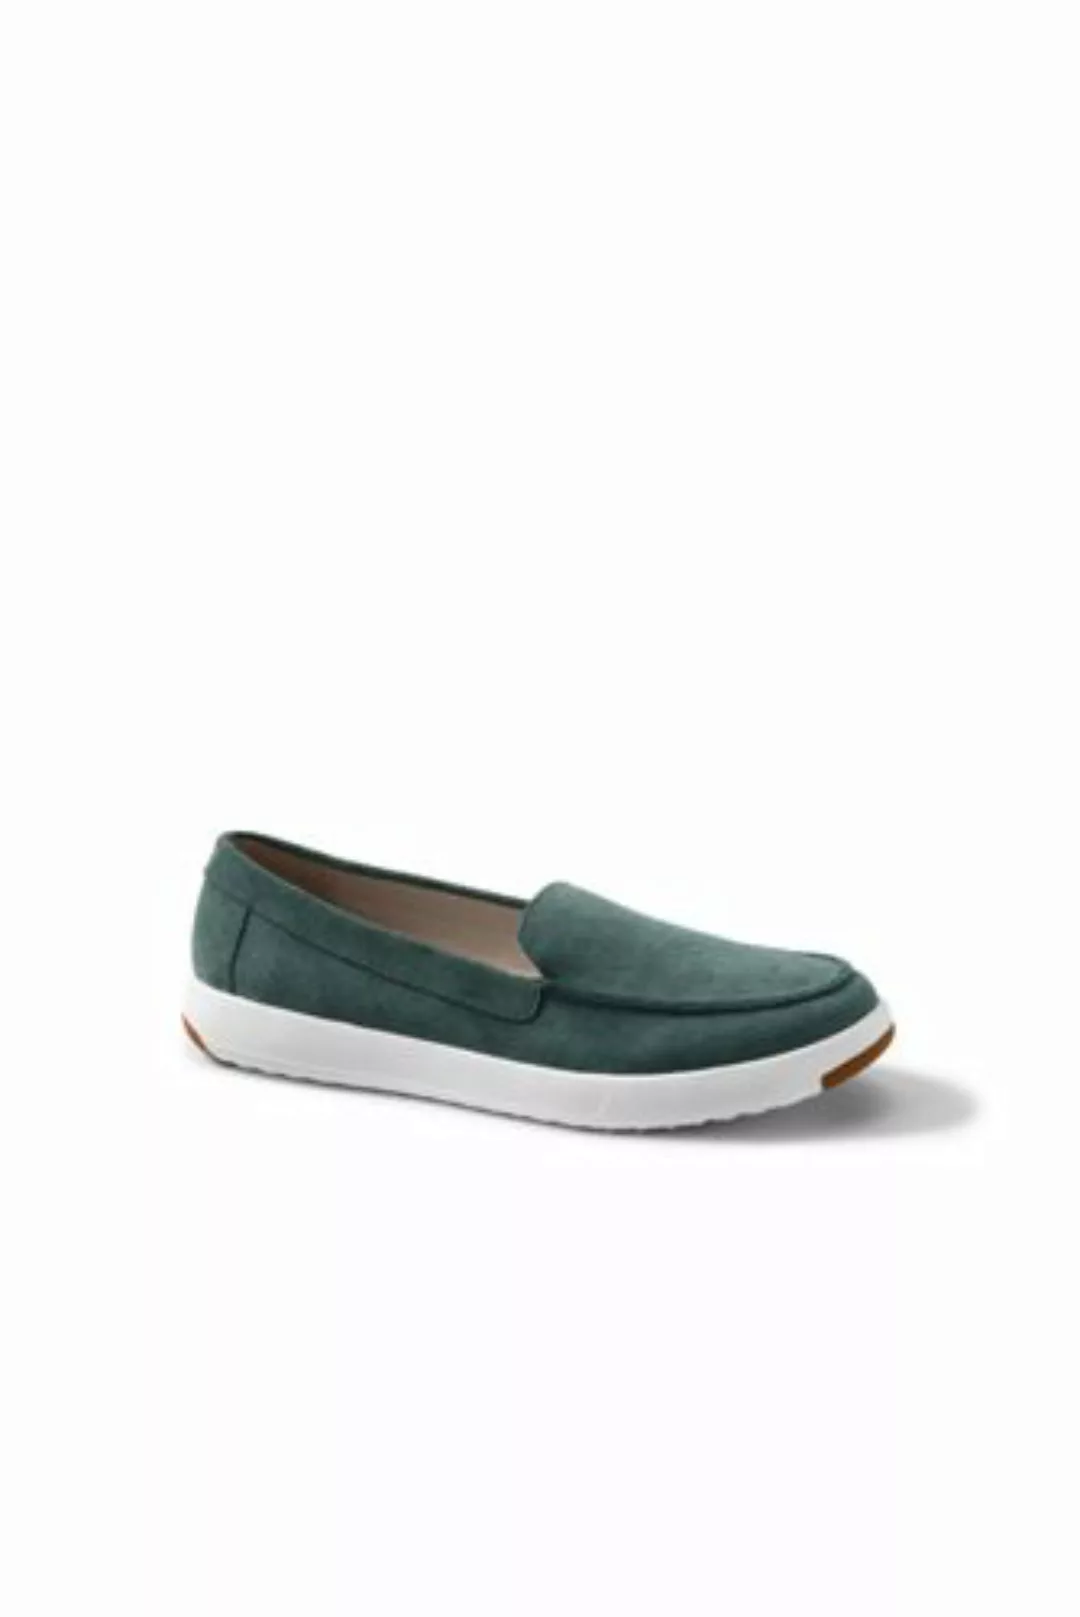 Federleichte Komfort-Loafer, Damen, Größe: 36 Normal, Grün, Rauleder, by La günstig online kaufen